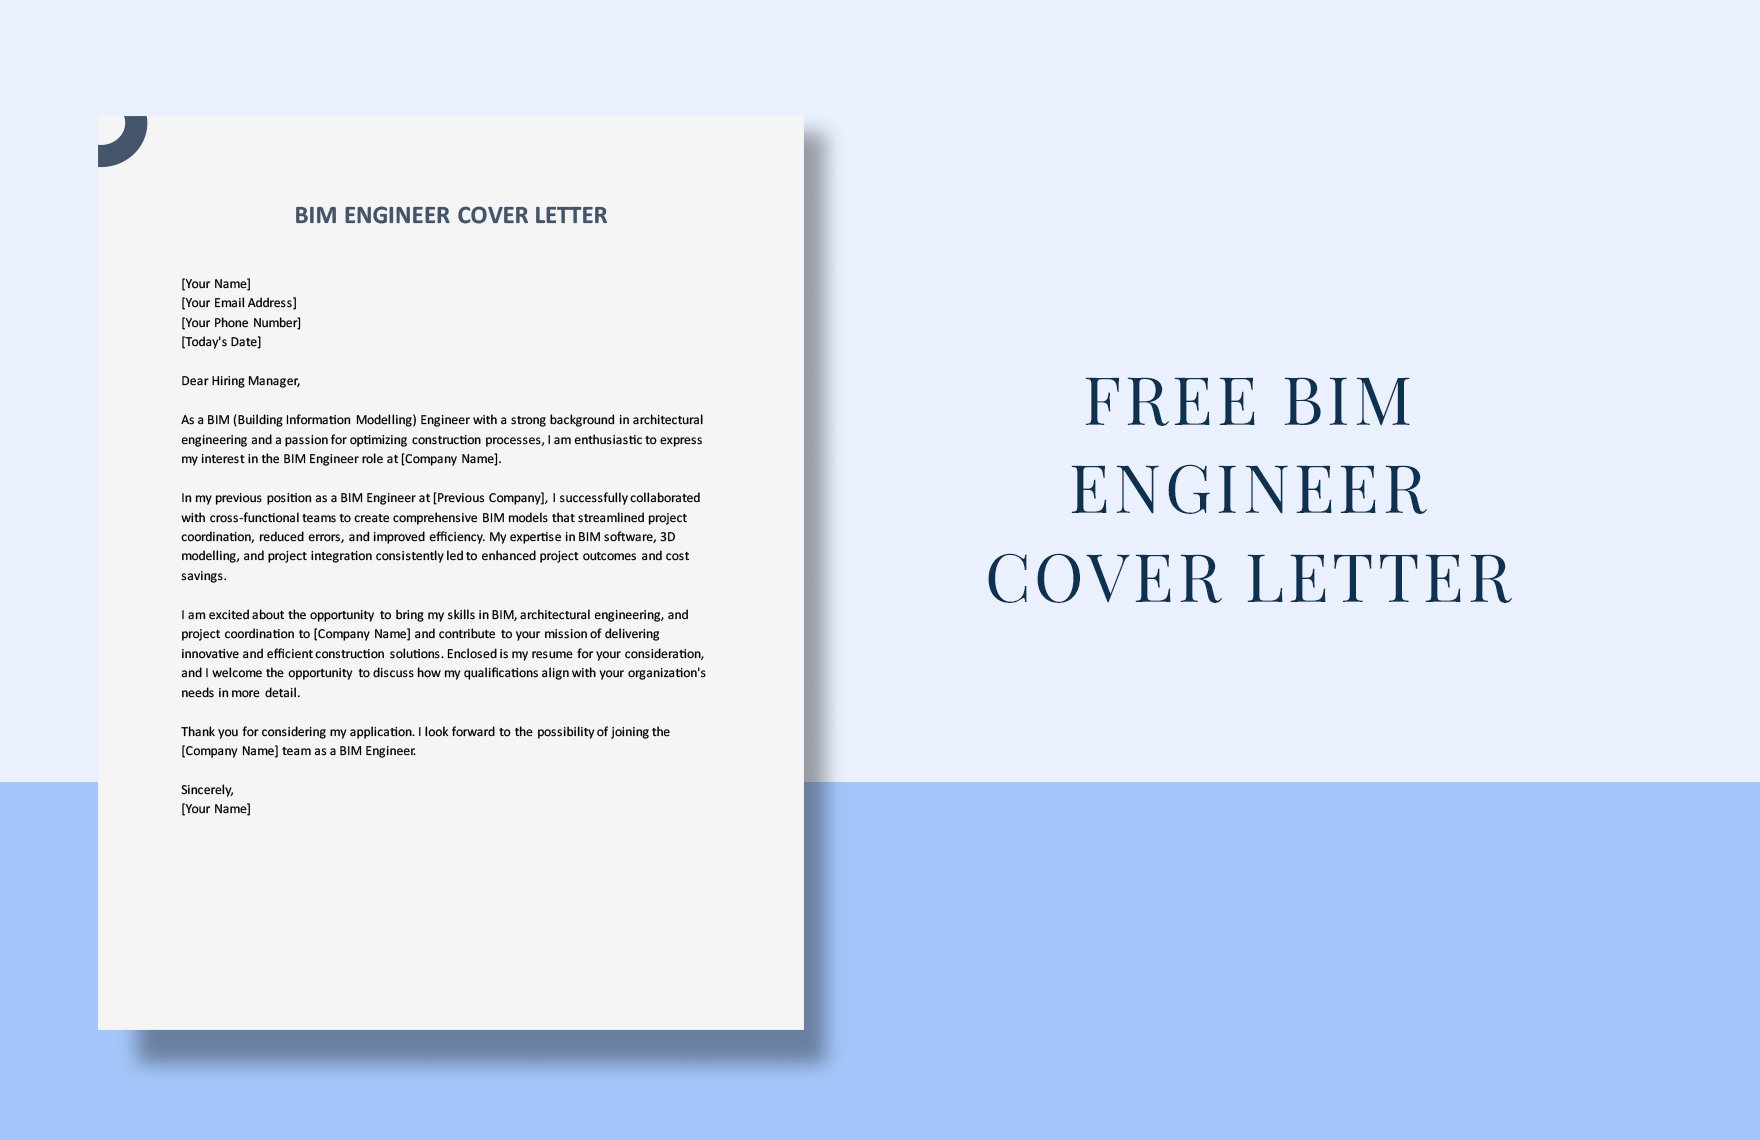 BIM Engineer Cover Letter